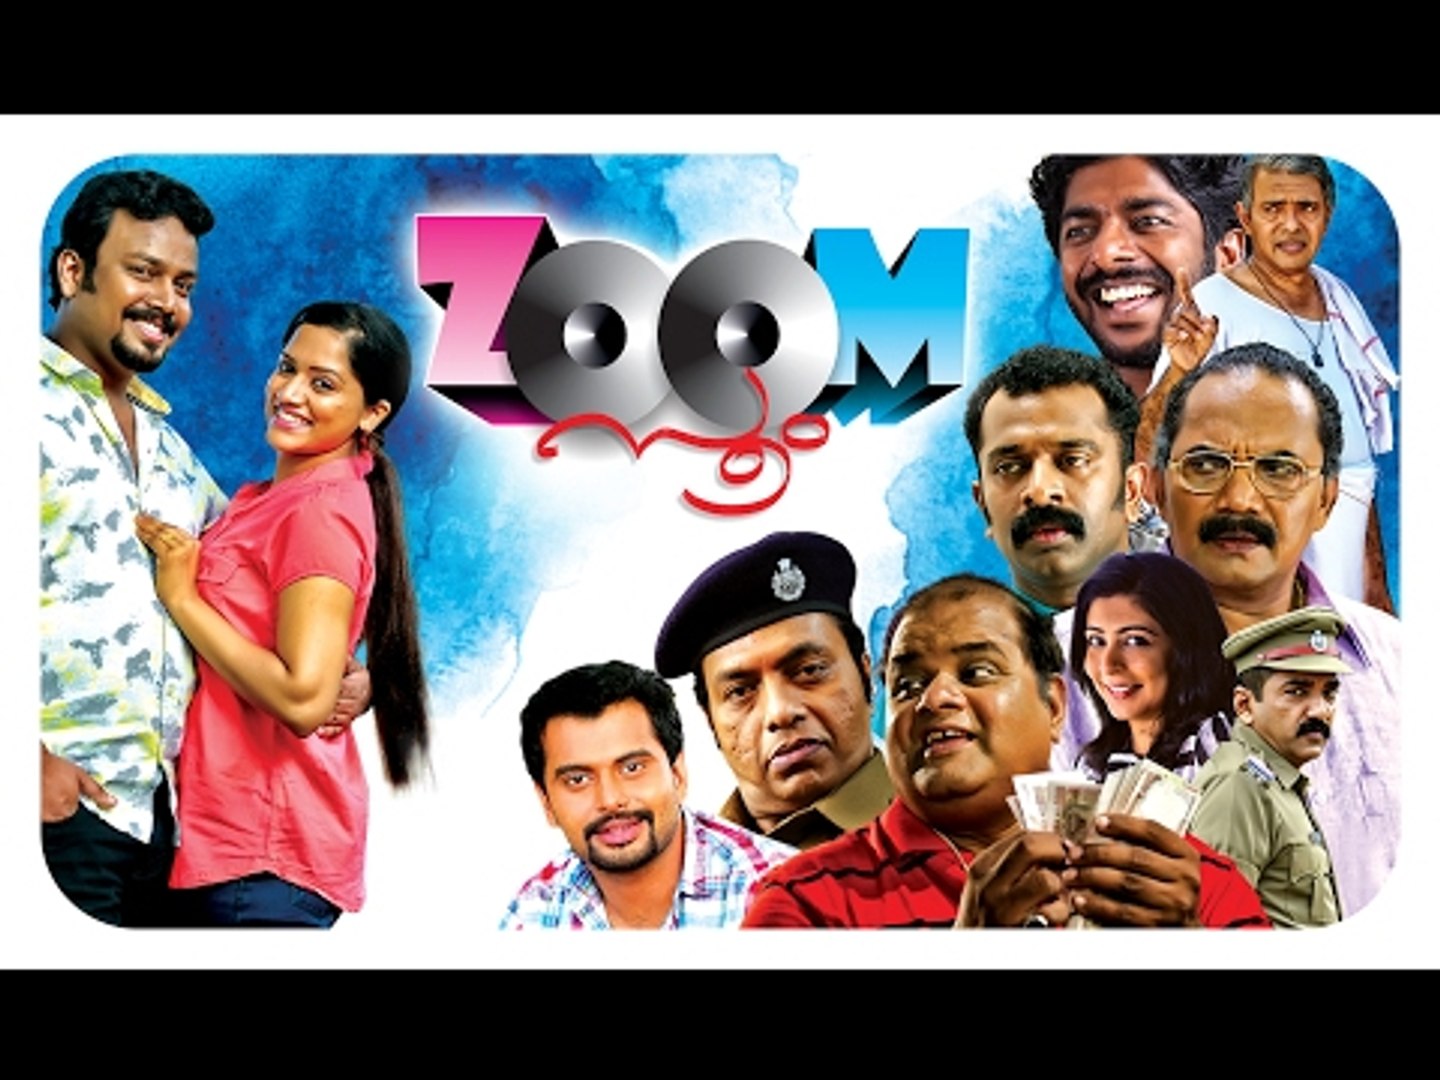 Malayalam Full Movie 2016 | Zoom | Malayalam Comedy Movies | Latest Malayalam Movie Full 2016 [HD]